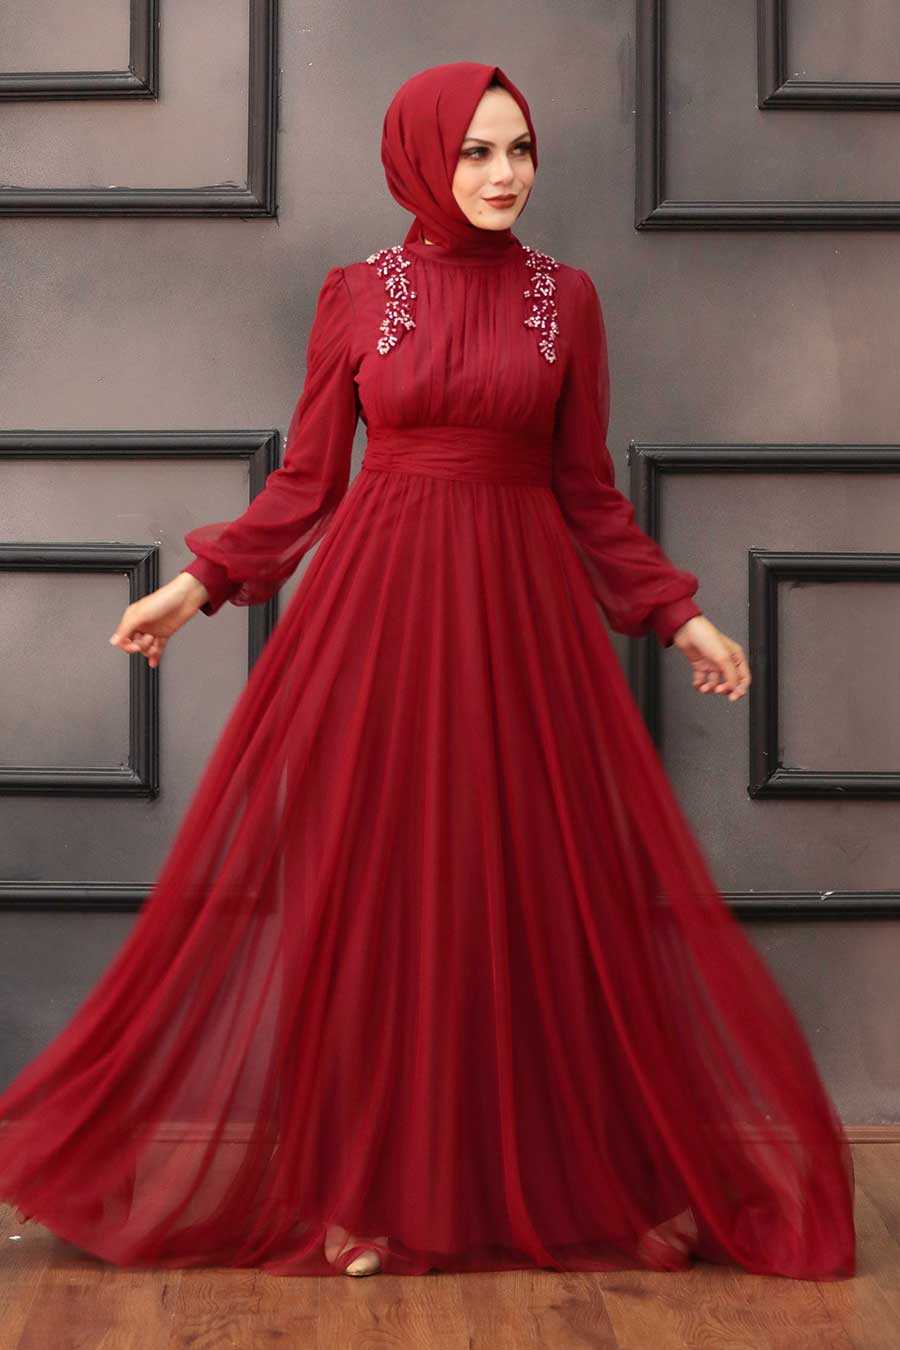 Claret Red Hijab Evening Dress 4348BR - Neva-style.com